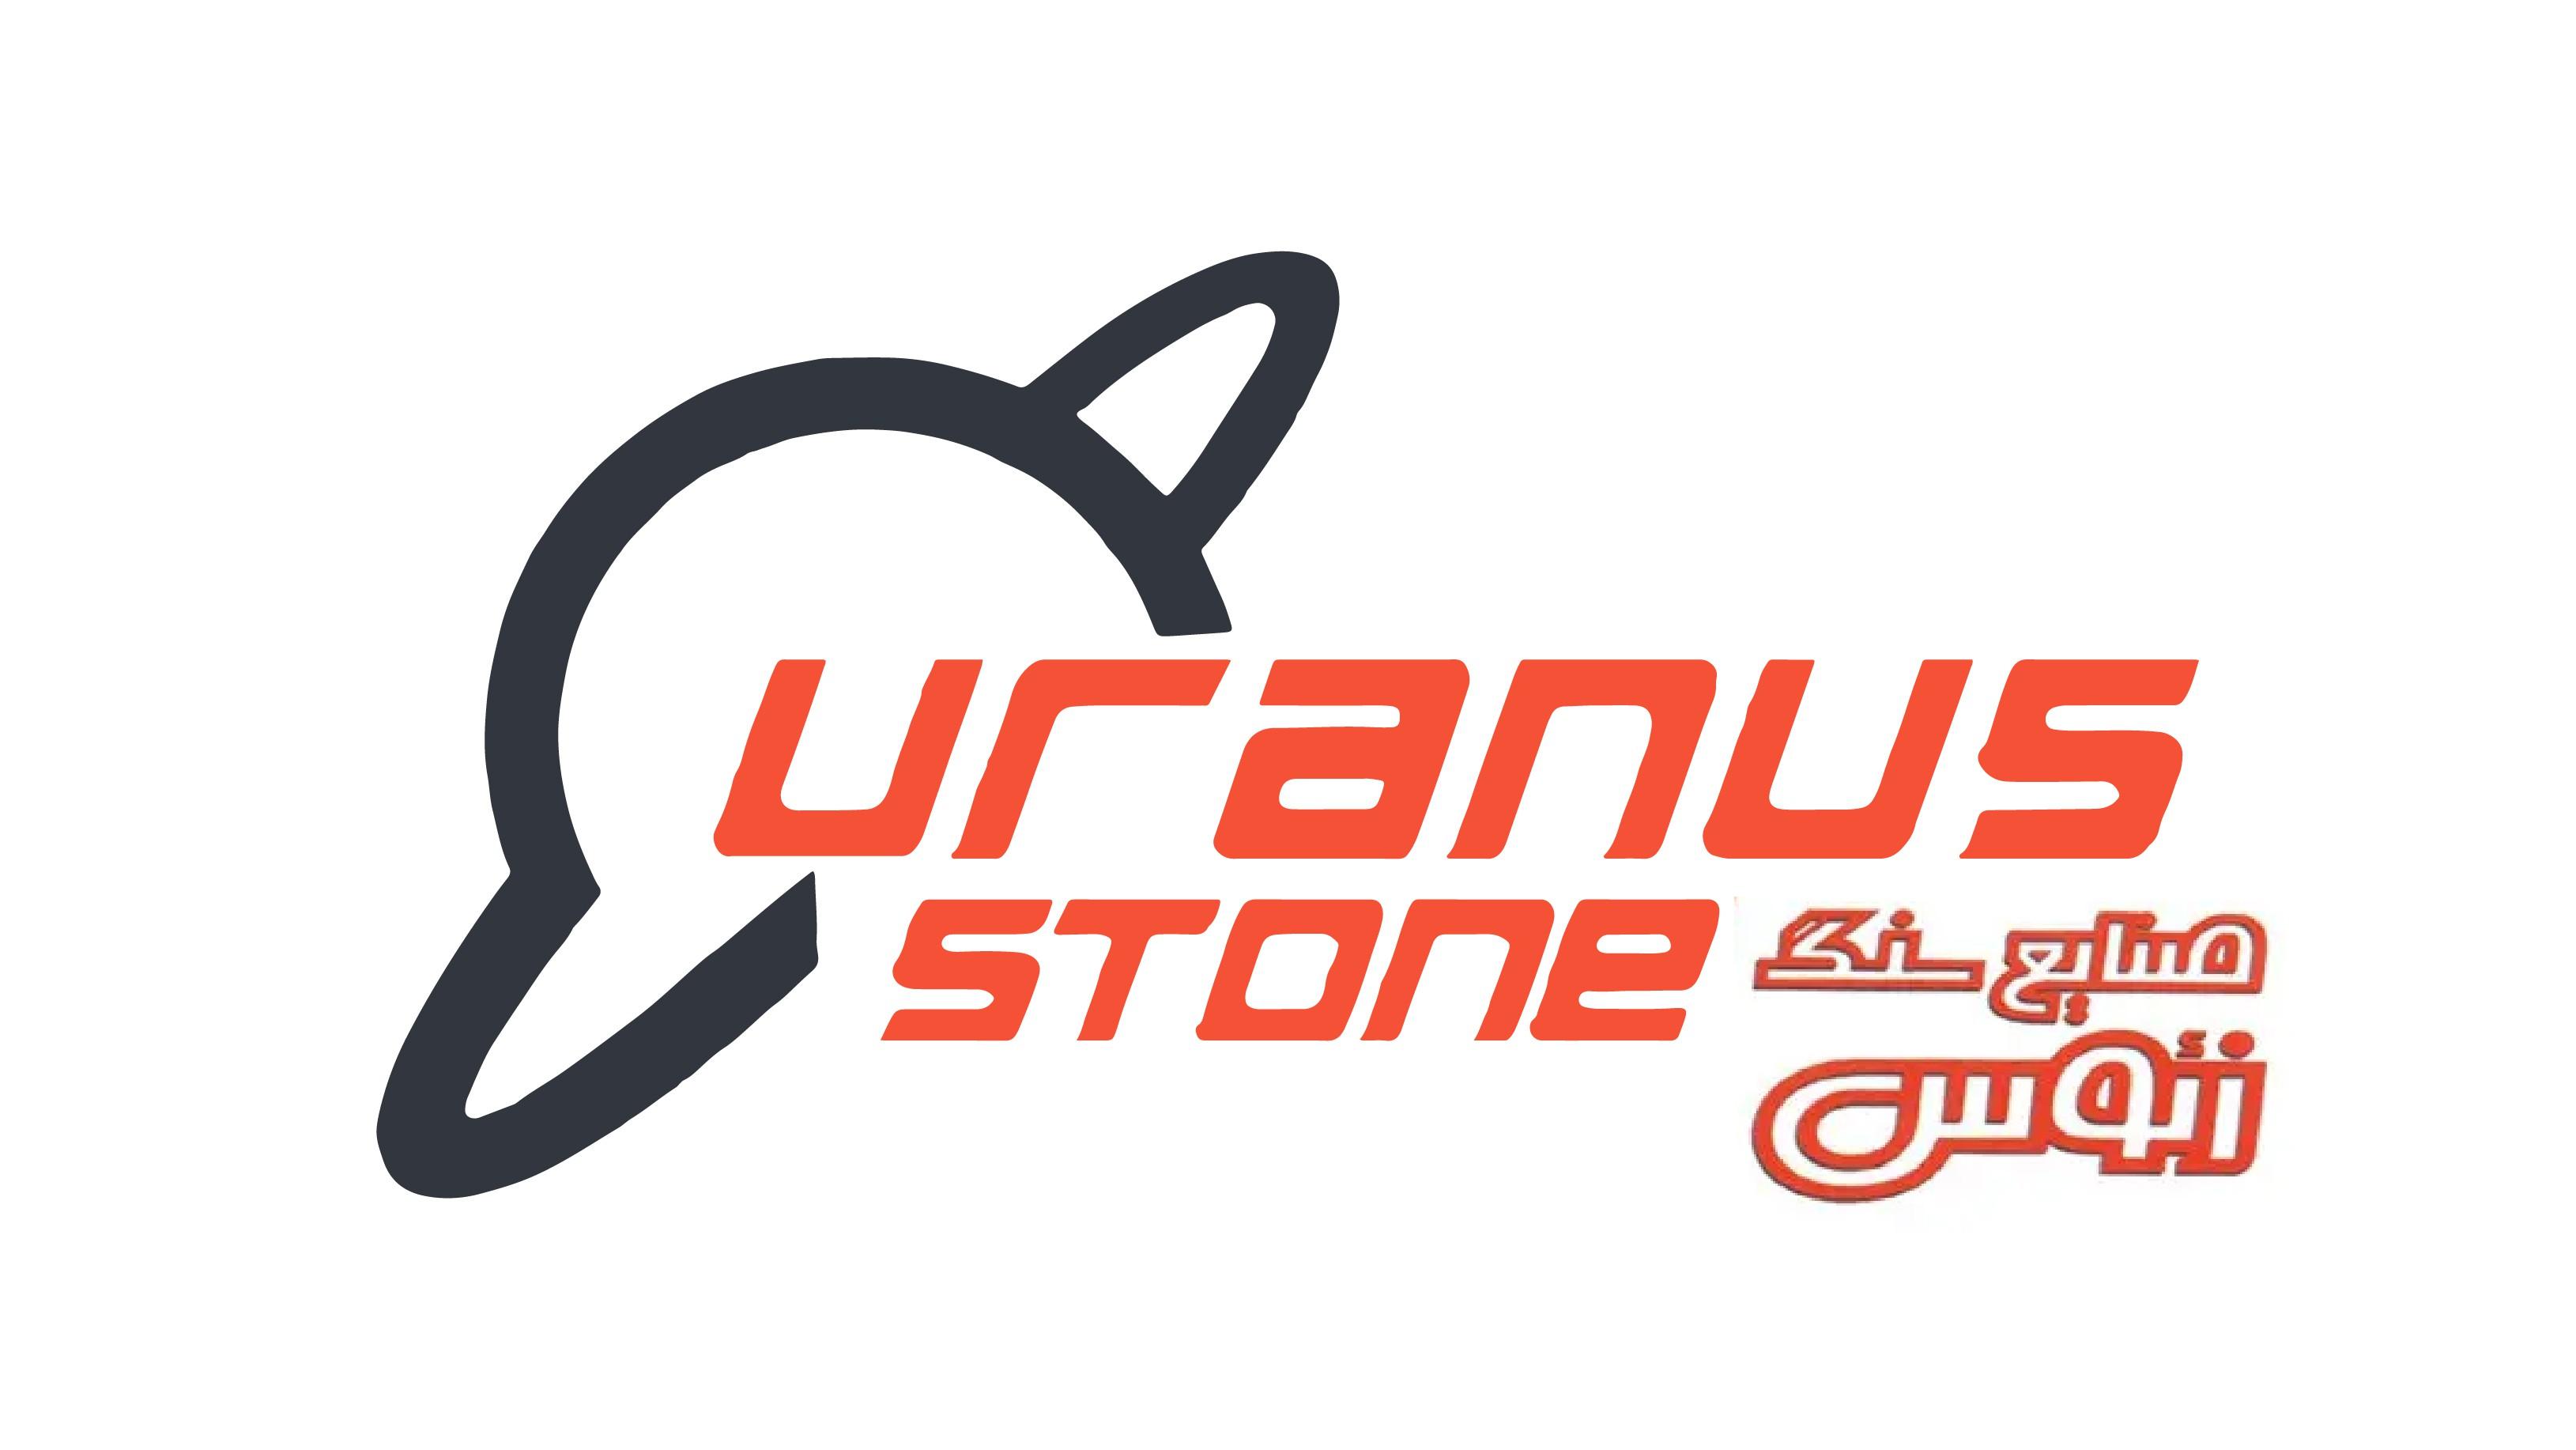 Uranus Stone 